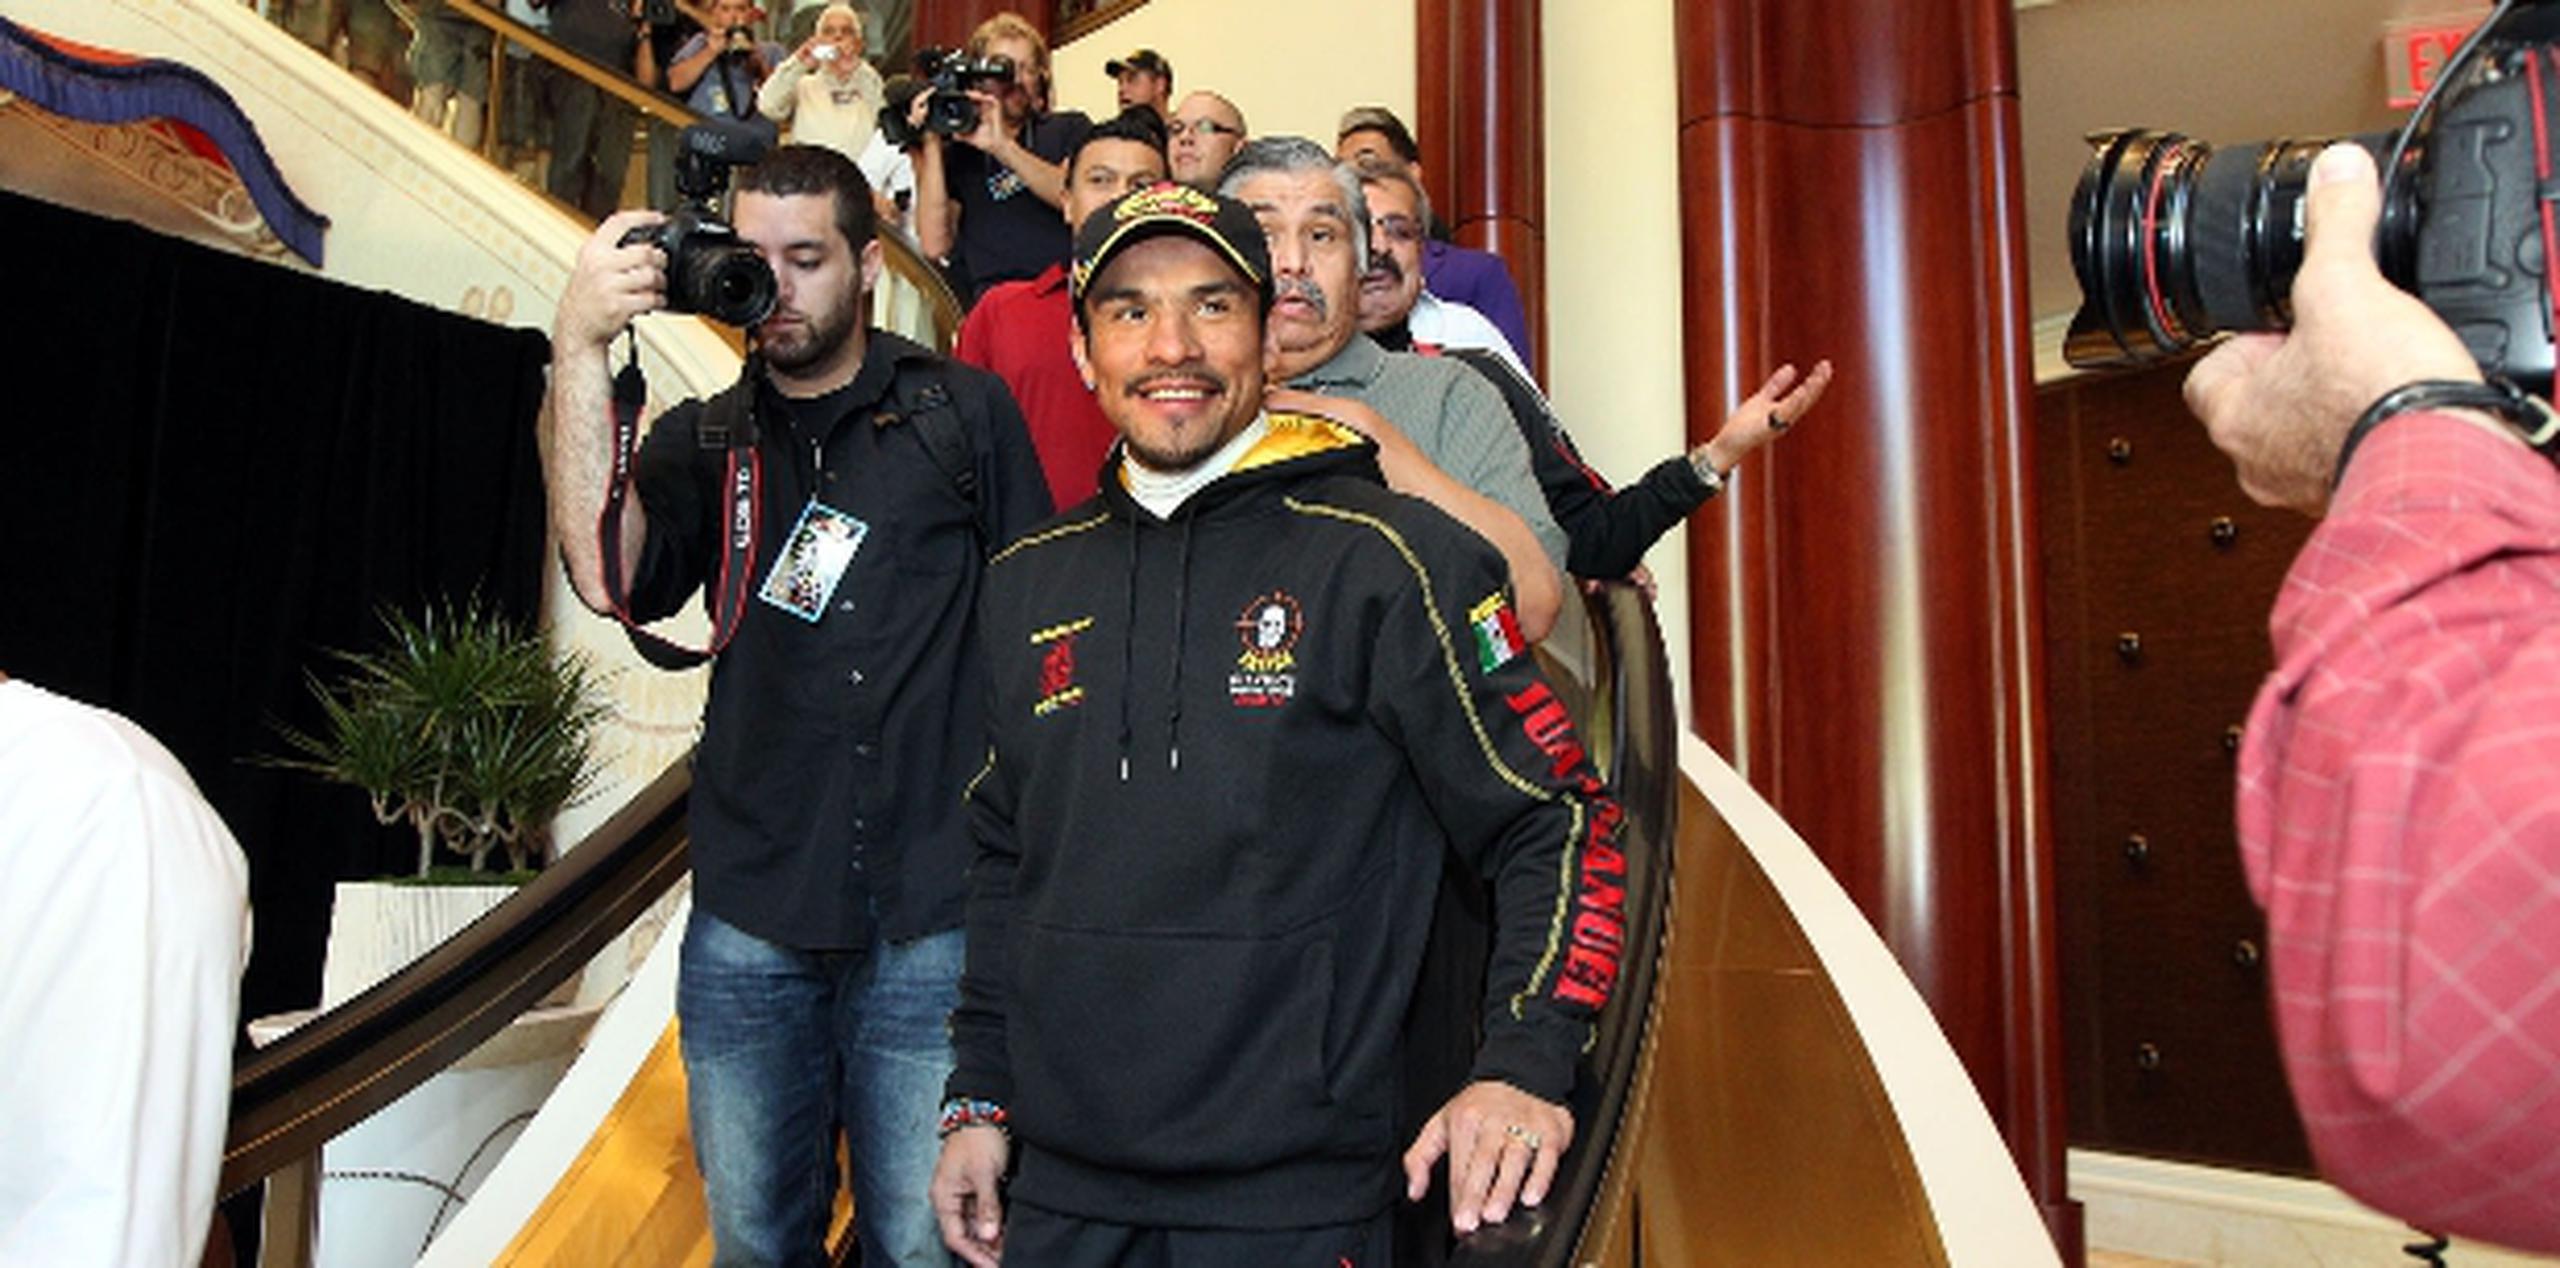 El mexicano Juan Manuel Márquez llega al Wynn Hotel acompañado de su séquito. Márquez busca coronarse por primera vez en el peso wélter. (Suministrada )